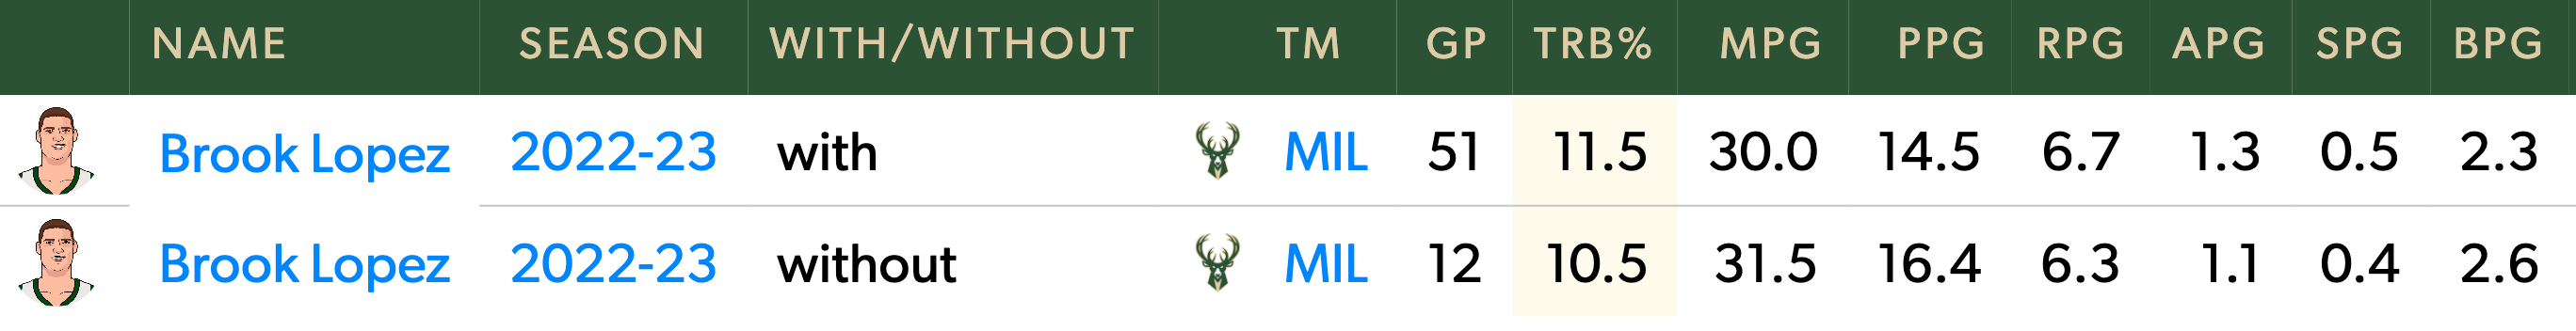 Laju rebound Lopez dengan dan tanpa Giannis musim ini.